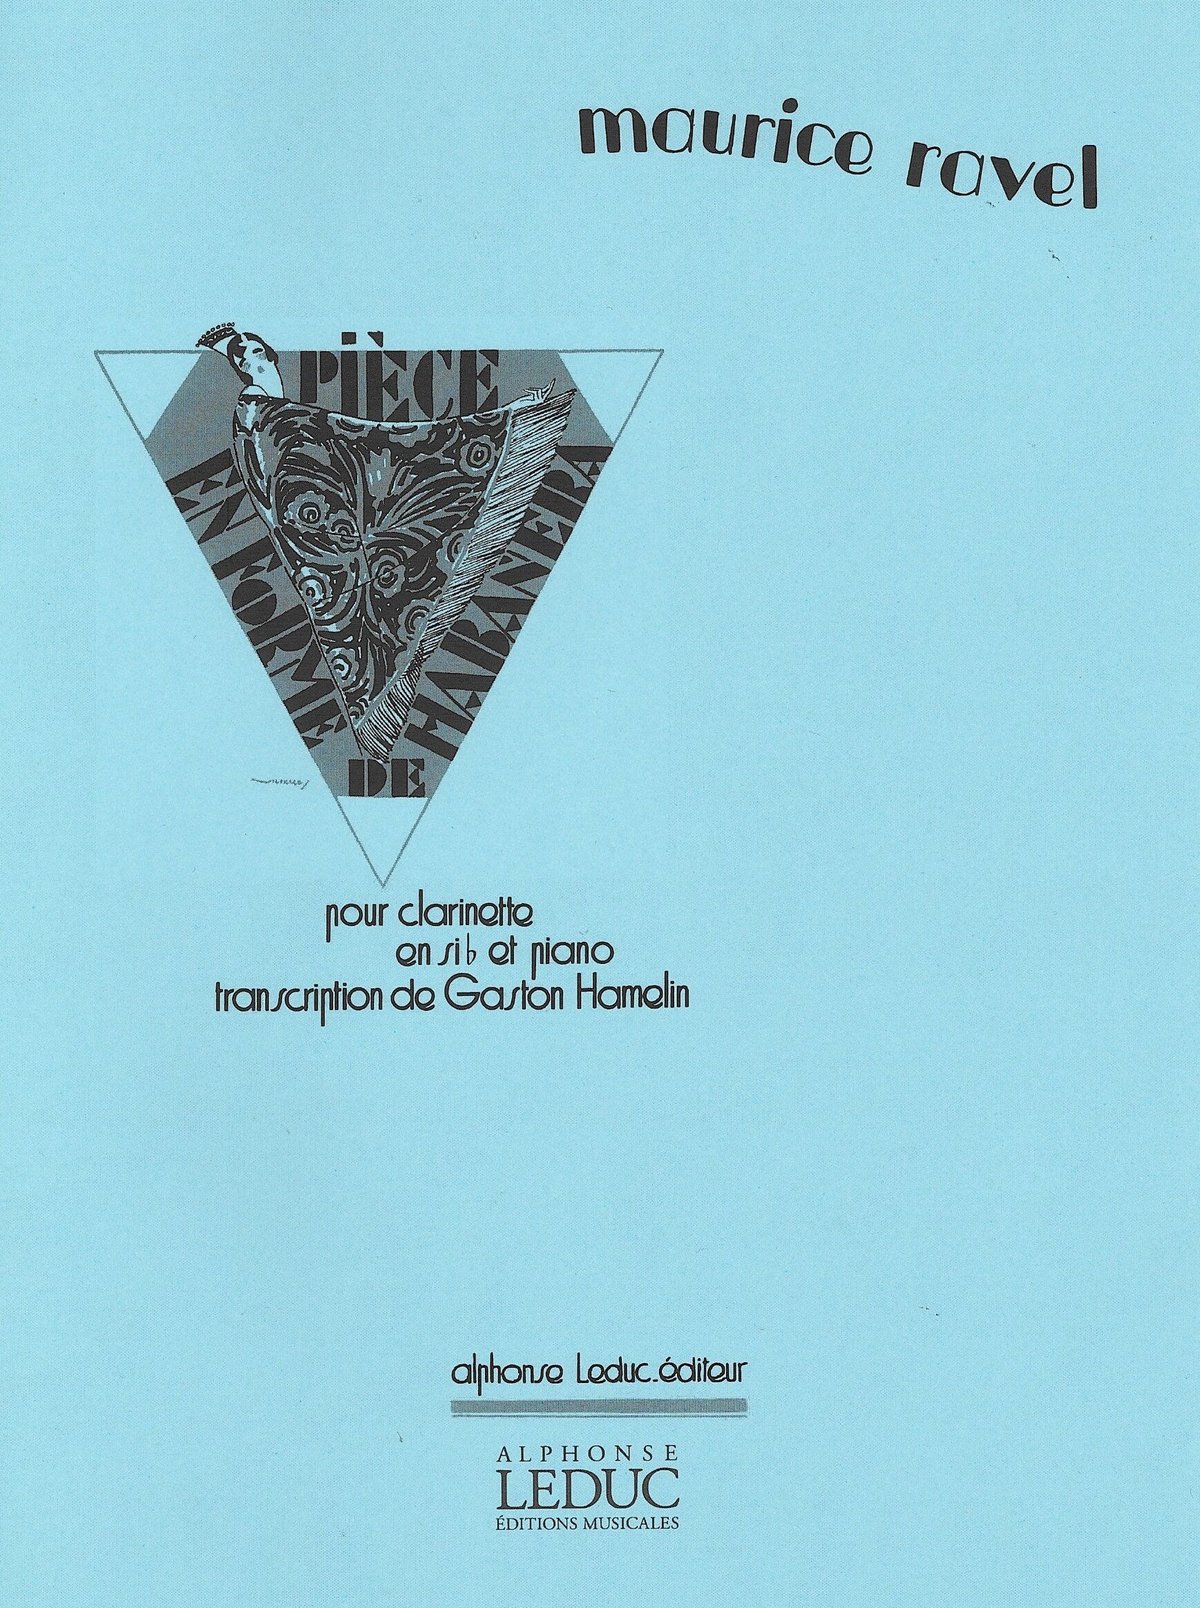 ラヴェル : ハバネラ形式による小品 (ファゴット、ピアノ) ルデュック出版